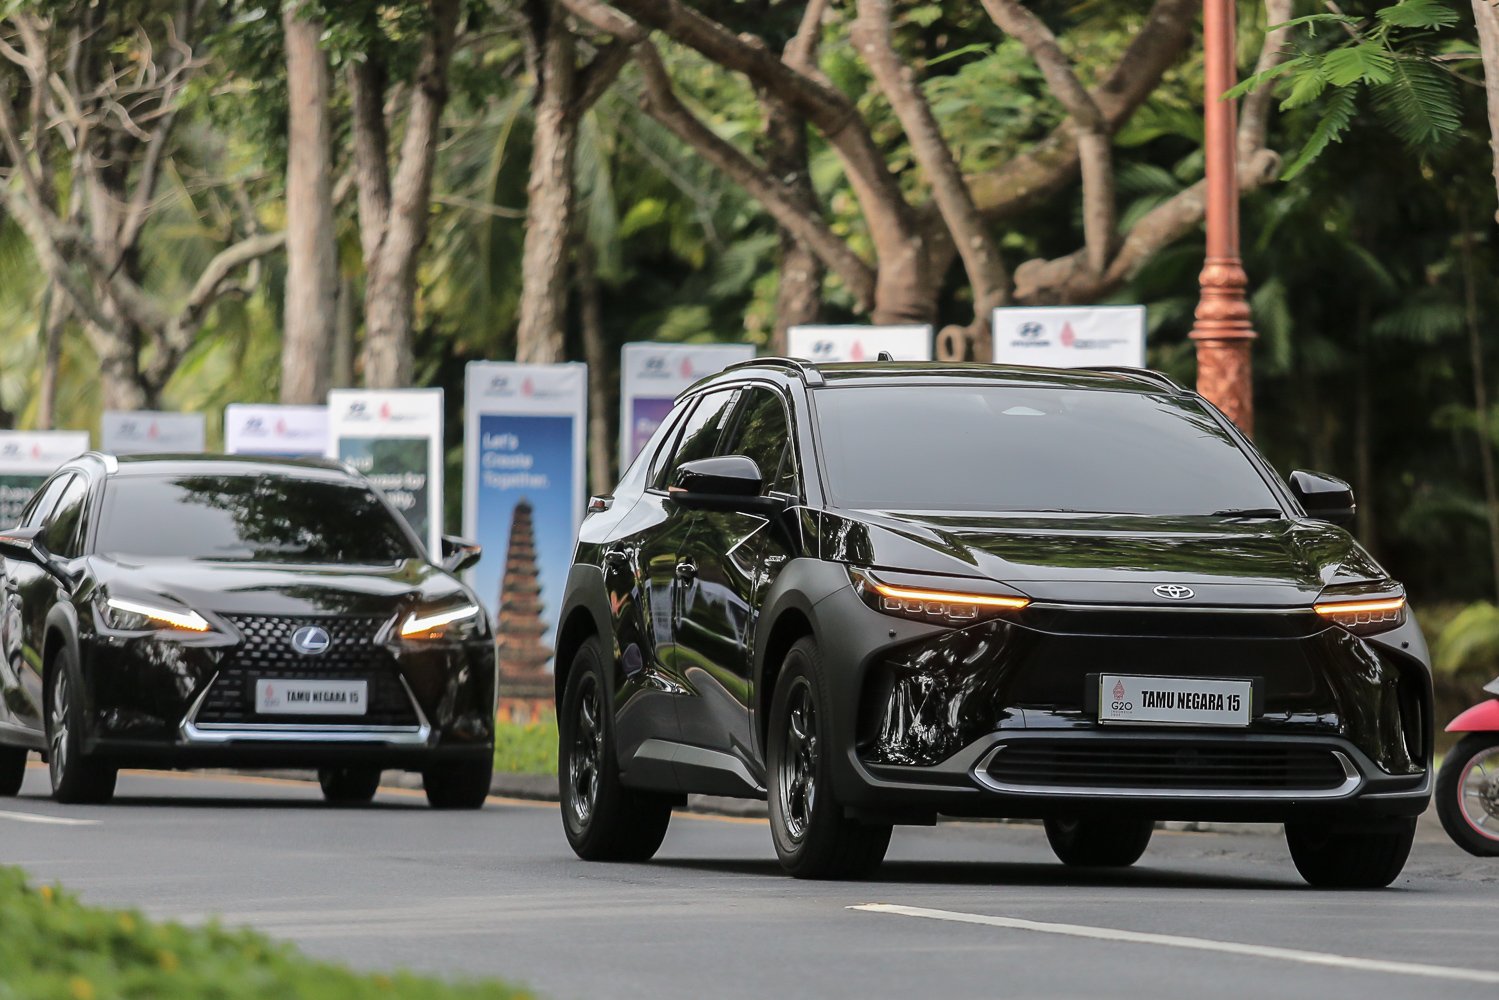 Delegasi tamu negara melintas menggunakan mobil listrik Toyota bZ4X di pool mobil listrik Bali Collection, Nusa Dua, Bali, Selasa (15/11). Toyota turut mendukung pemerintah dengan mengirimkan sedikitnya 143 mobil listrik di ajang KTT G20.